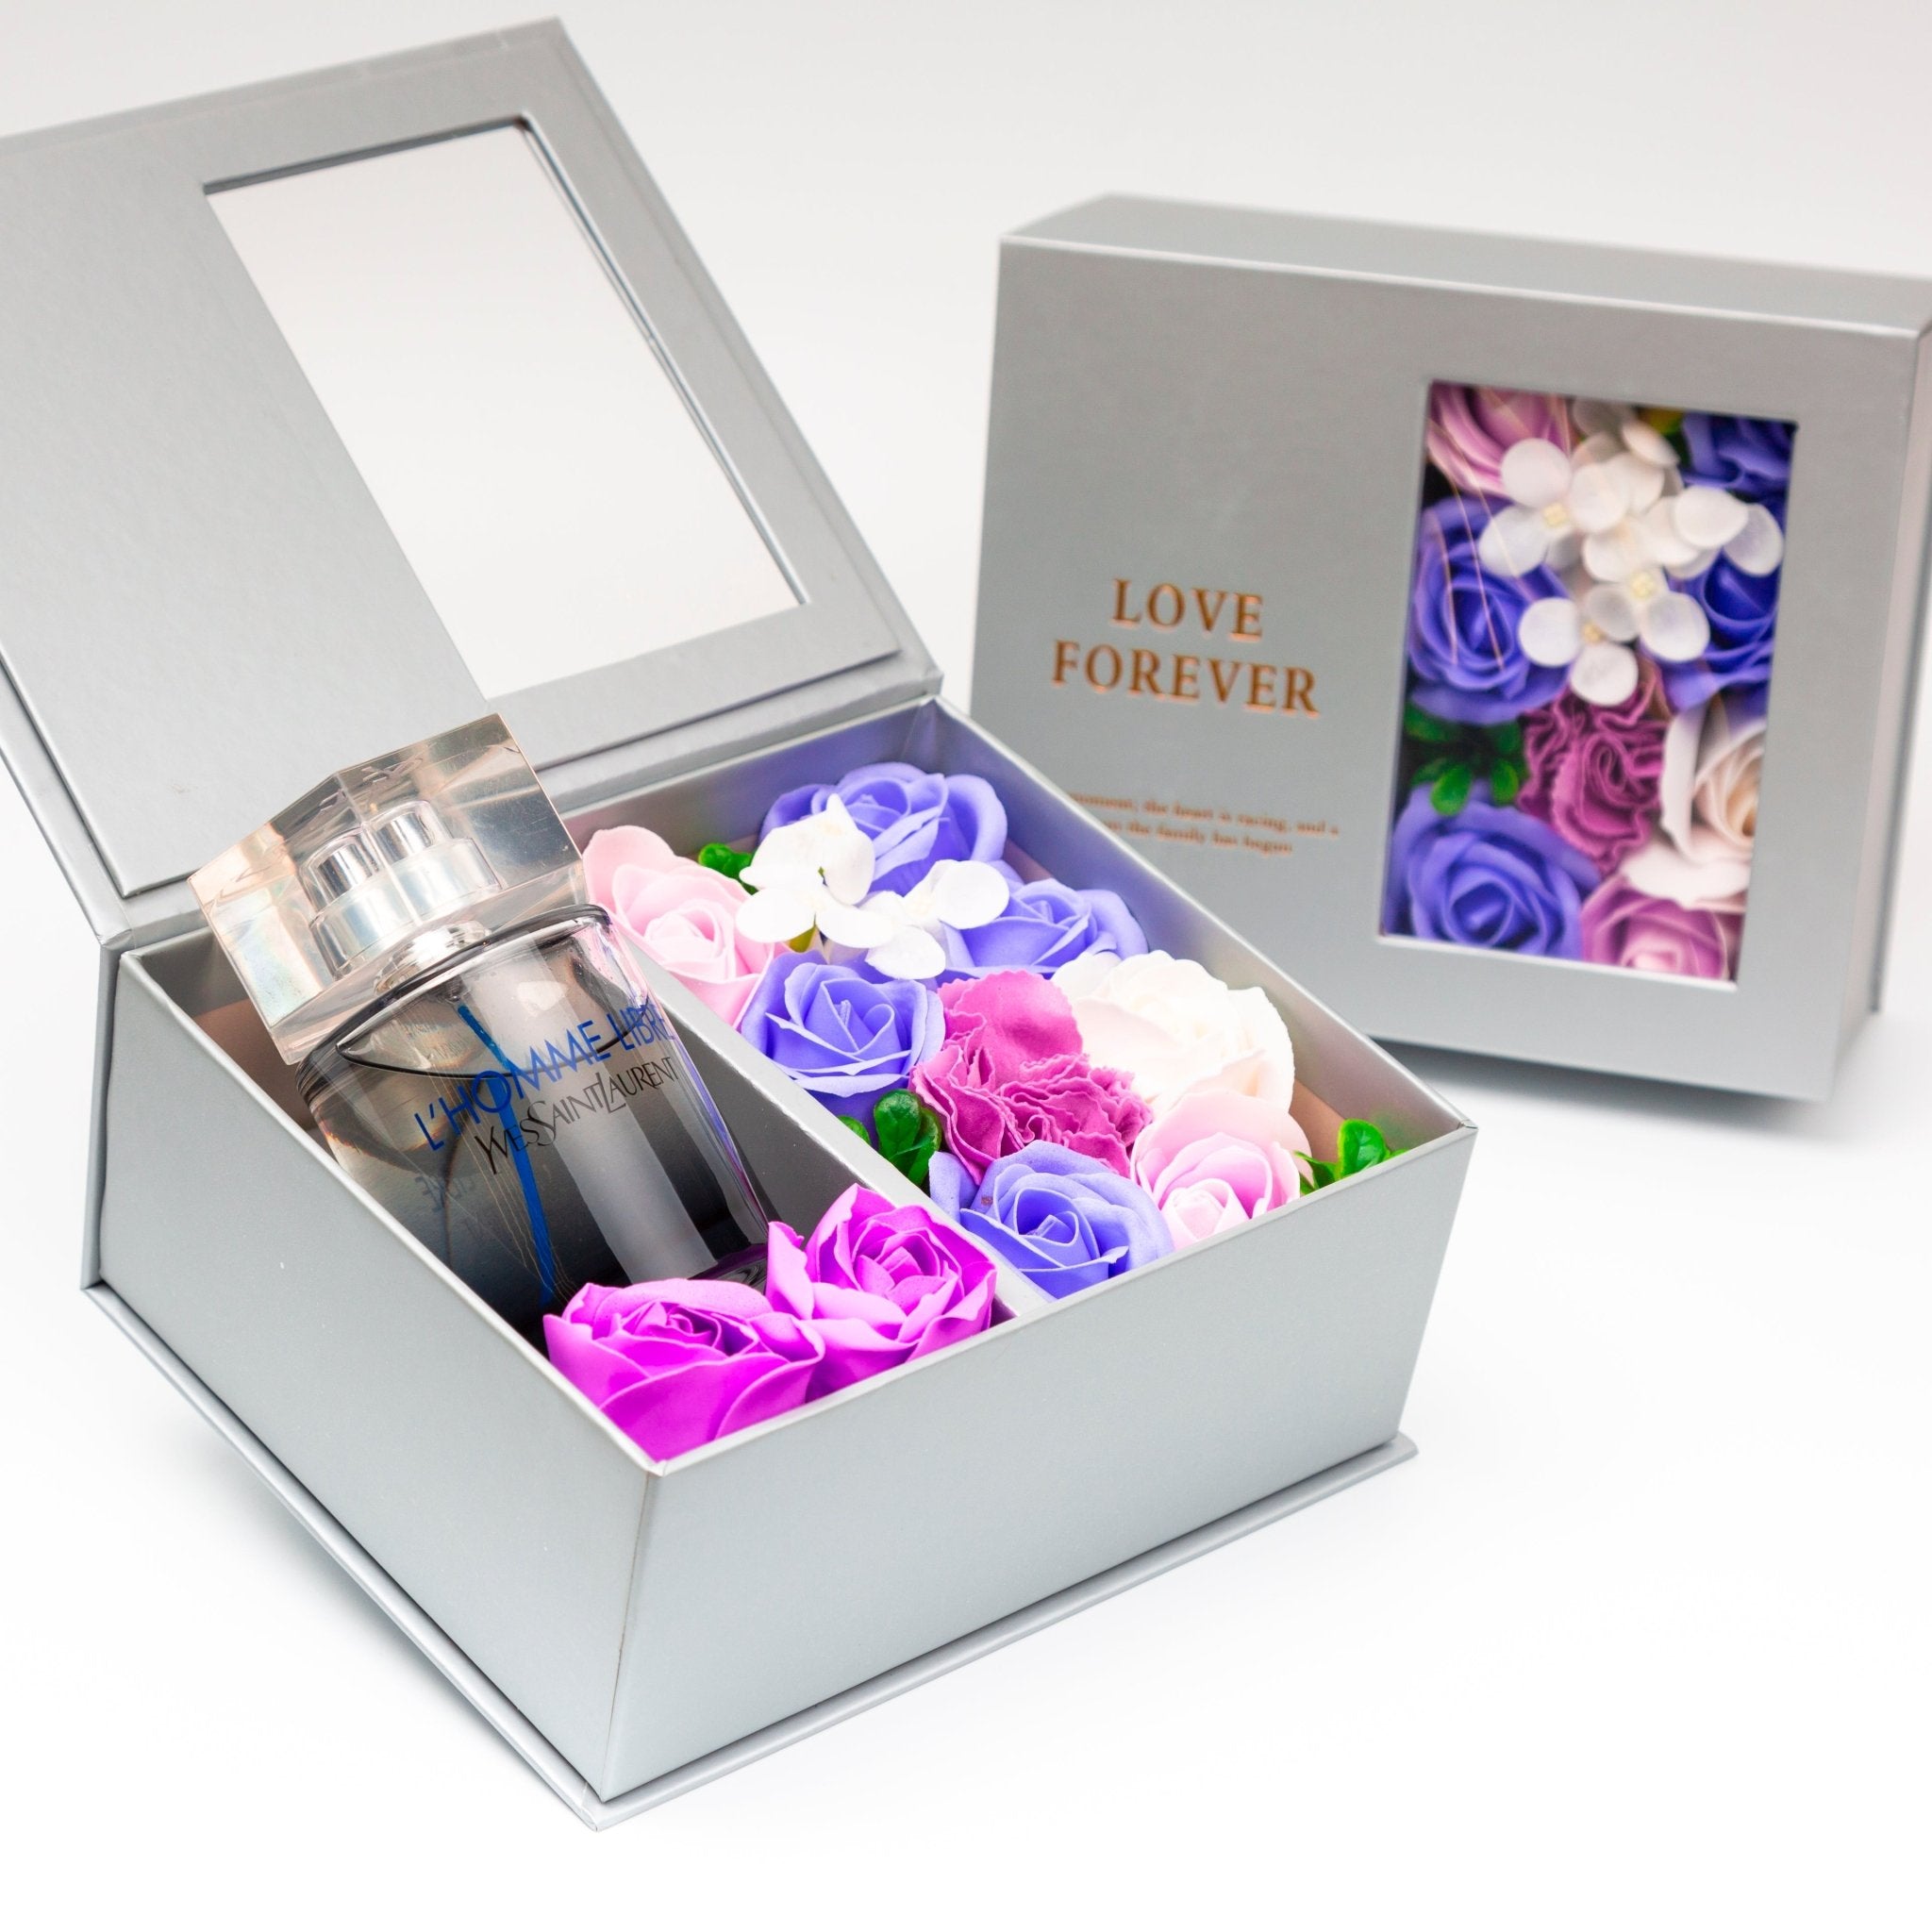 Flower Box - Perfume Gift For Men 8 - #shoFlower Box - Perfume Gift For Men 8p_name#Flower Box - Perfume Gift For Men 8Gift Boxes & TinsTakreemTakreem.joMenPerfumeFlower Box - Perfume Gift For Men 8 - Takreem.jo